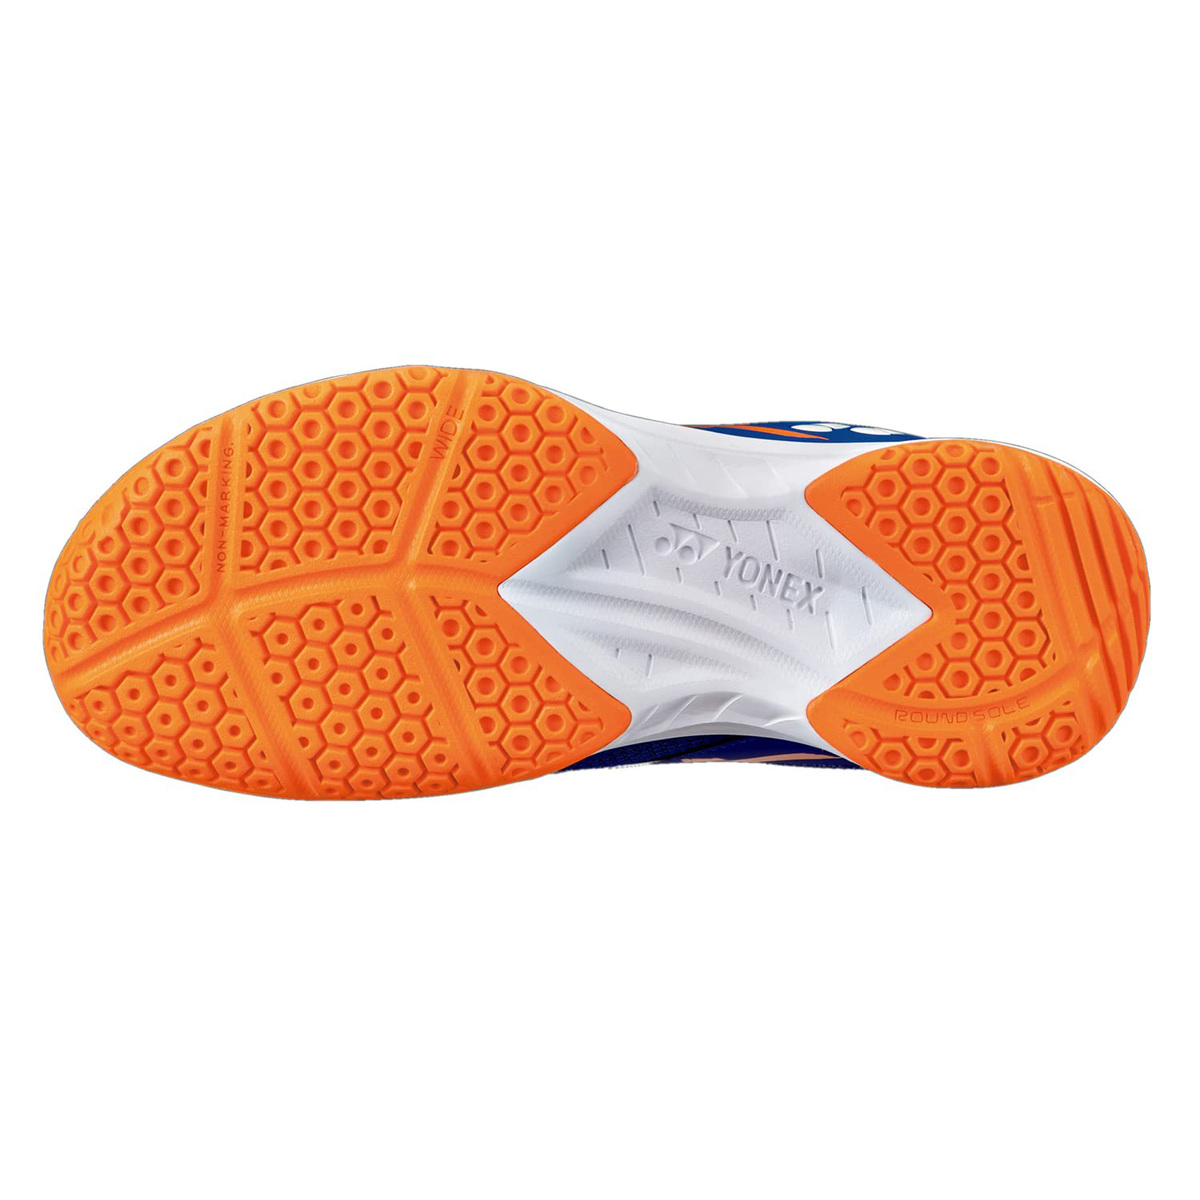 يونيكس حذاء تنس الريشة للرجال، SHB39WEX، أزرق/برتقالي، 40